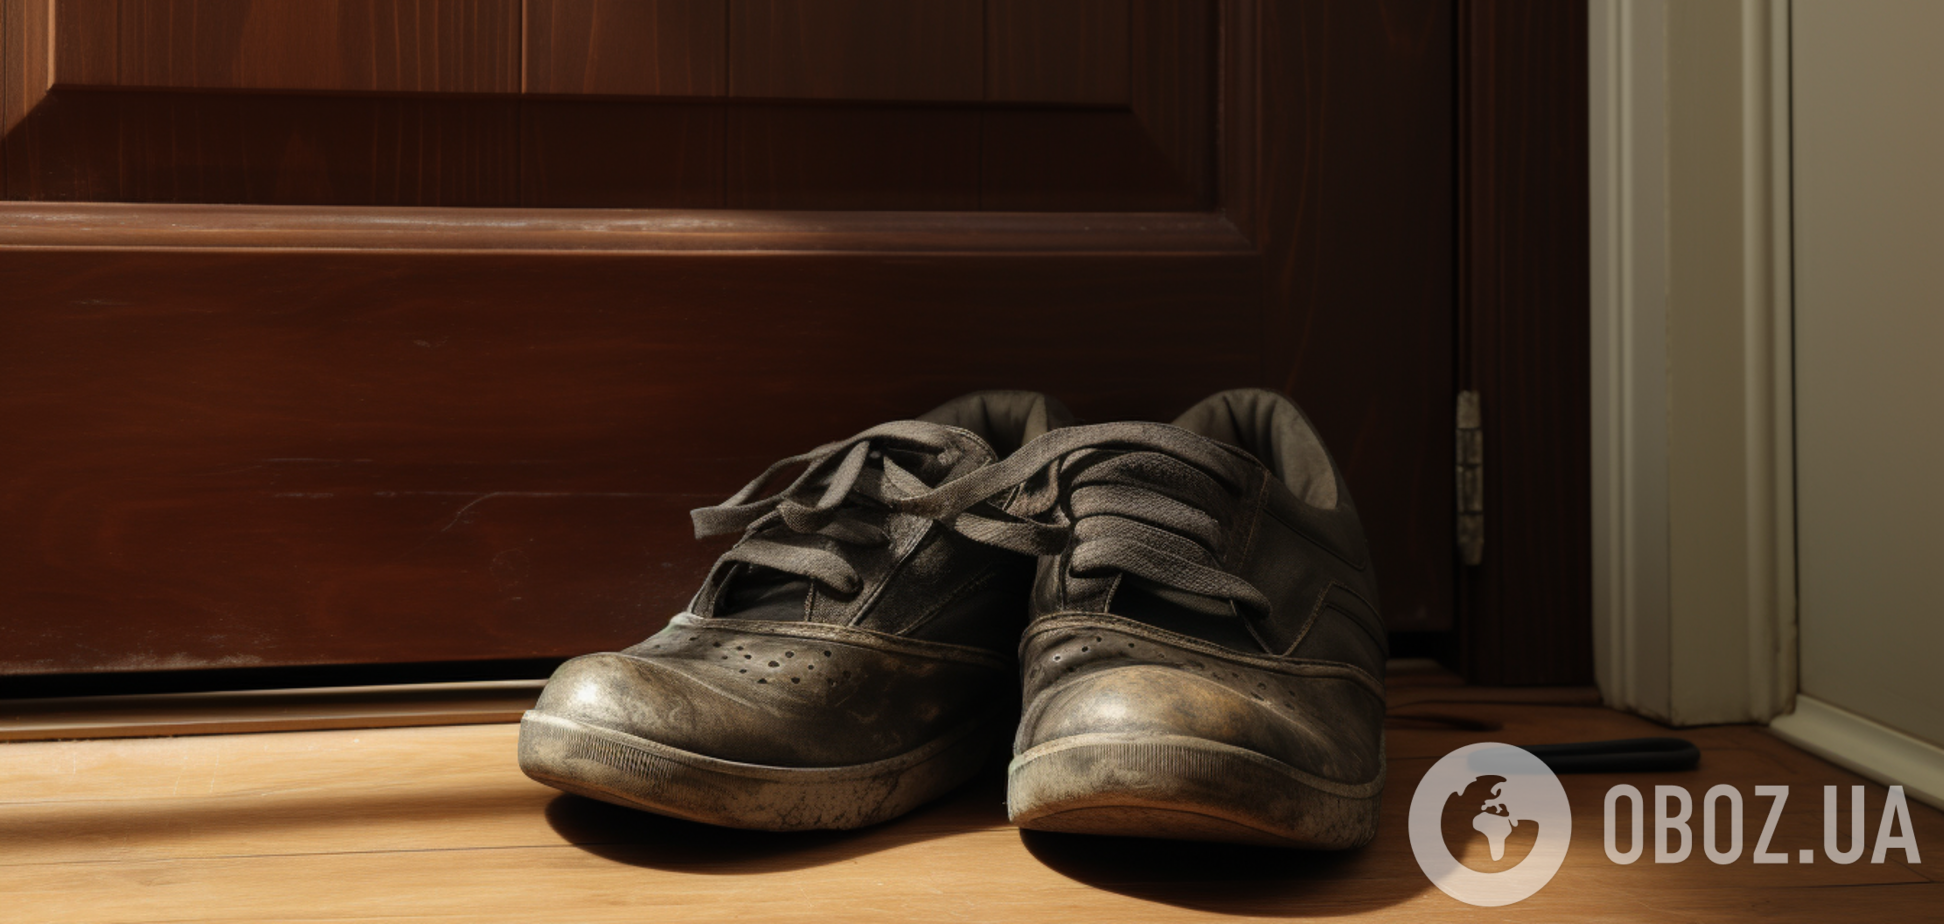 Как избавиться от влаги и неприятного запаха в обуви: эффективные домашние способы